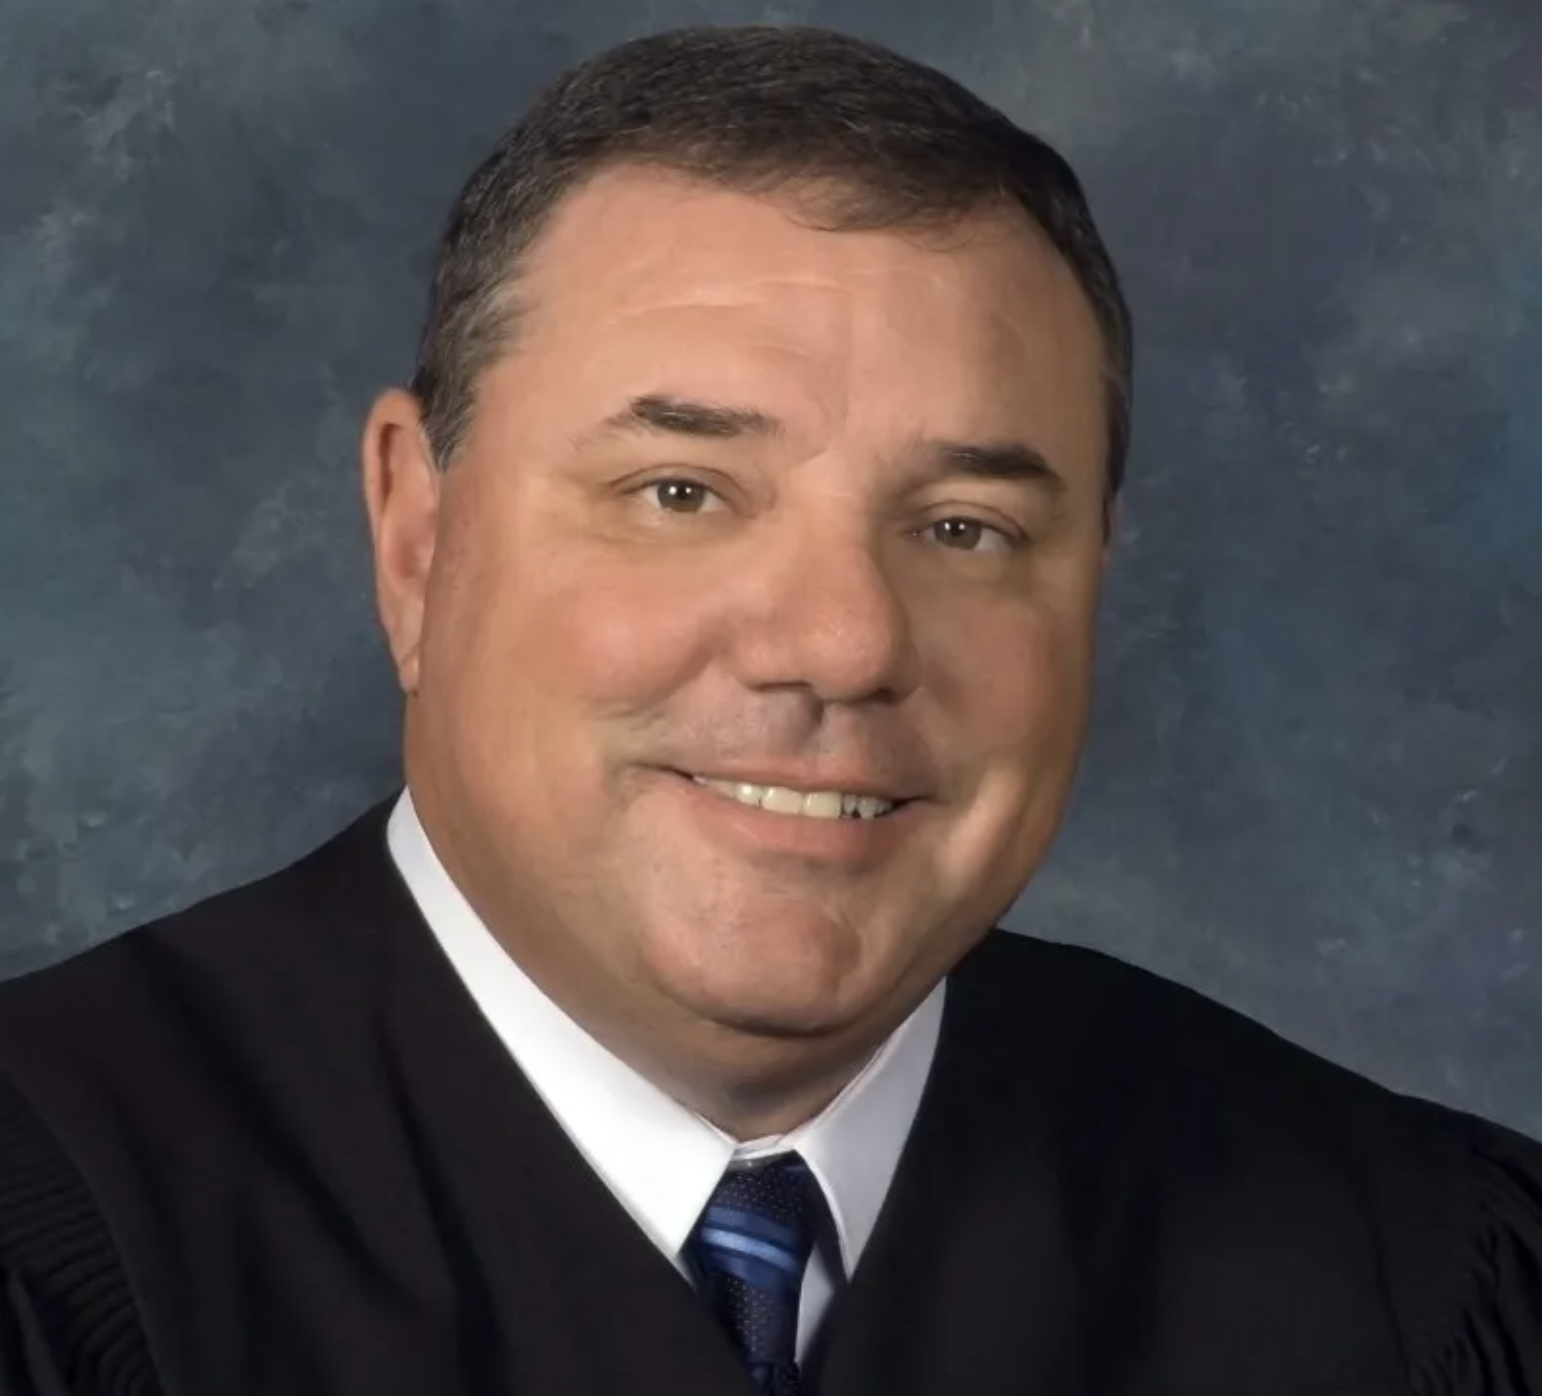 U.S. District Court Judge Matthew McFarland